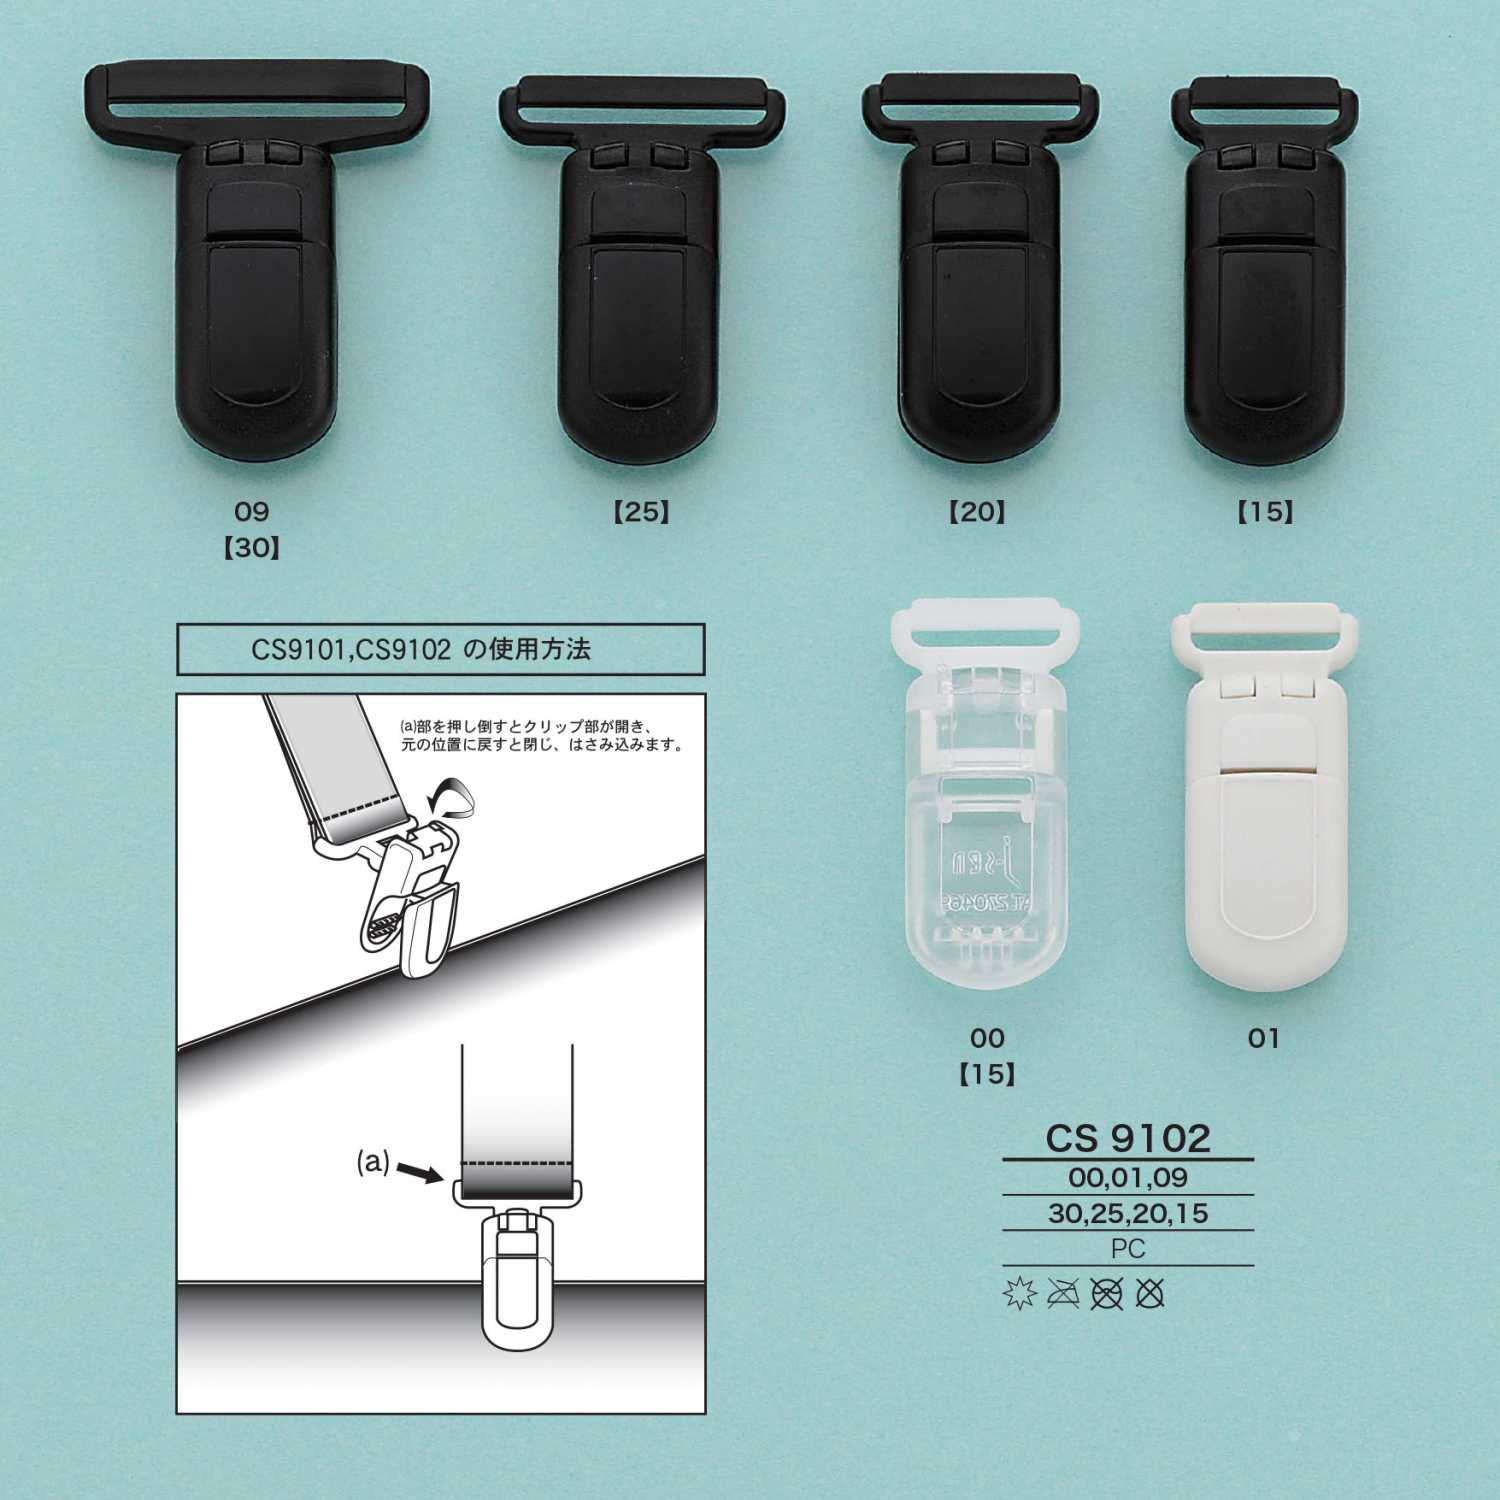 CS9102 吊带夹子[扣和环] 爱丽丝纽扣